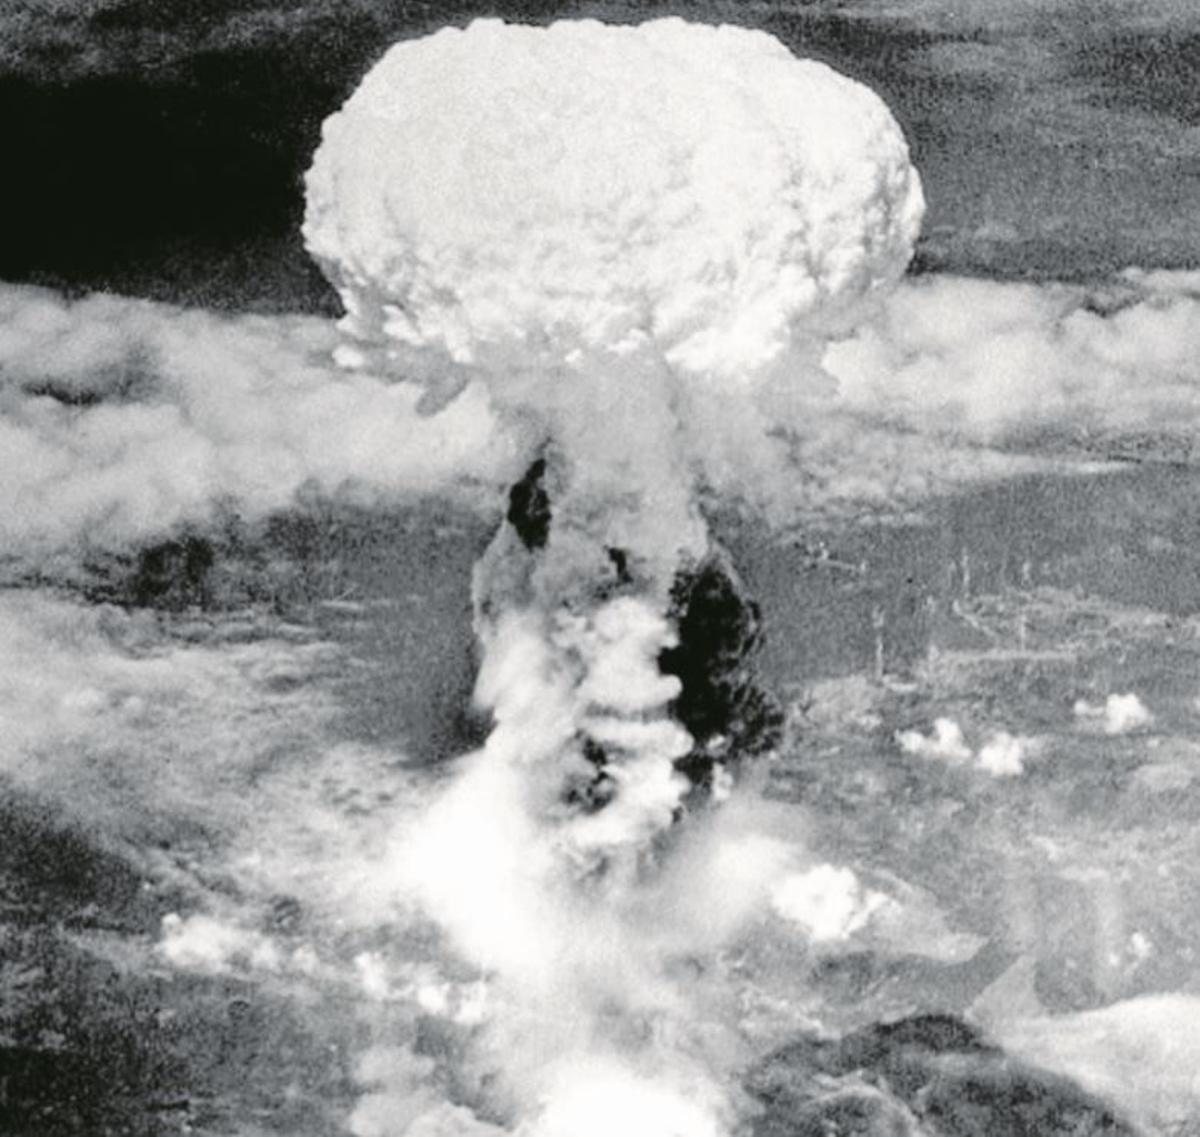 Vista del hongo atómico sobre Hiroshima. (JAPON)